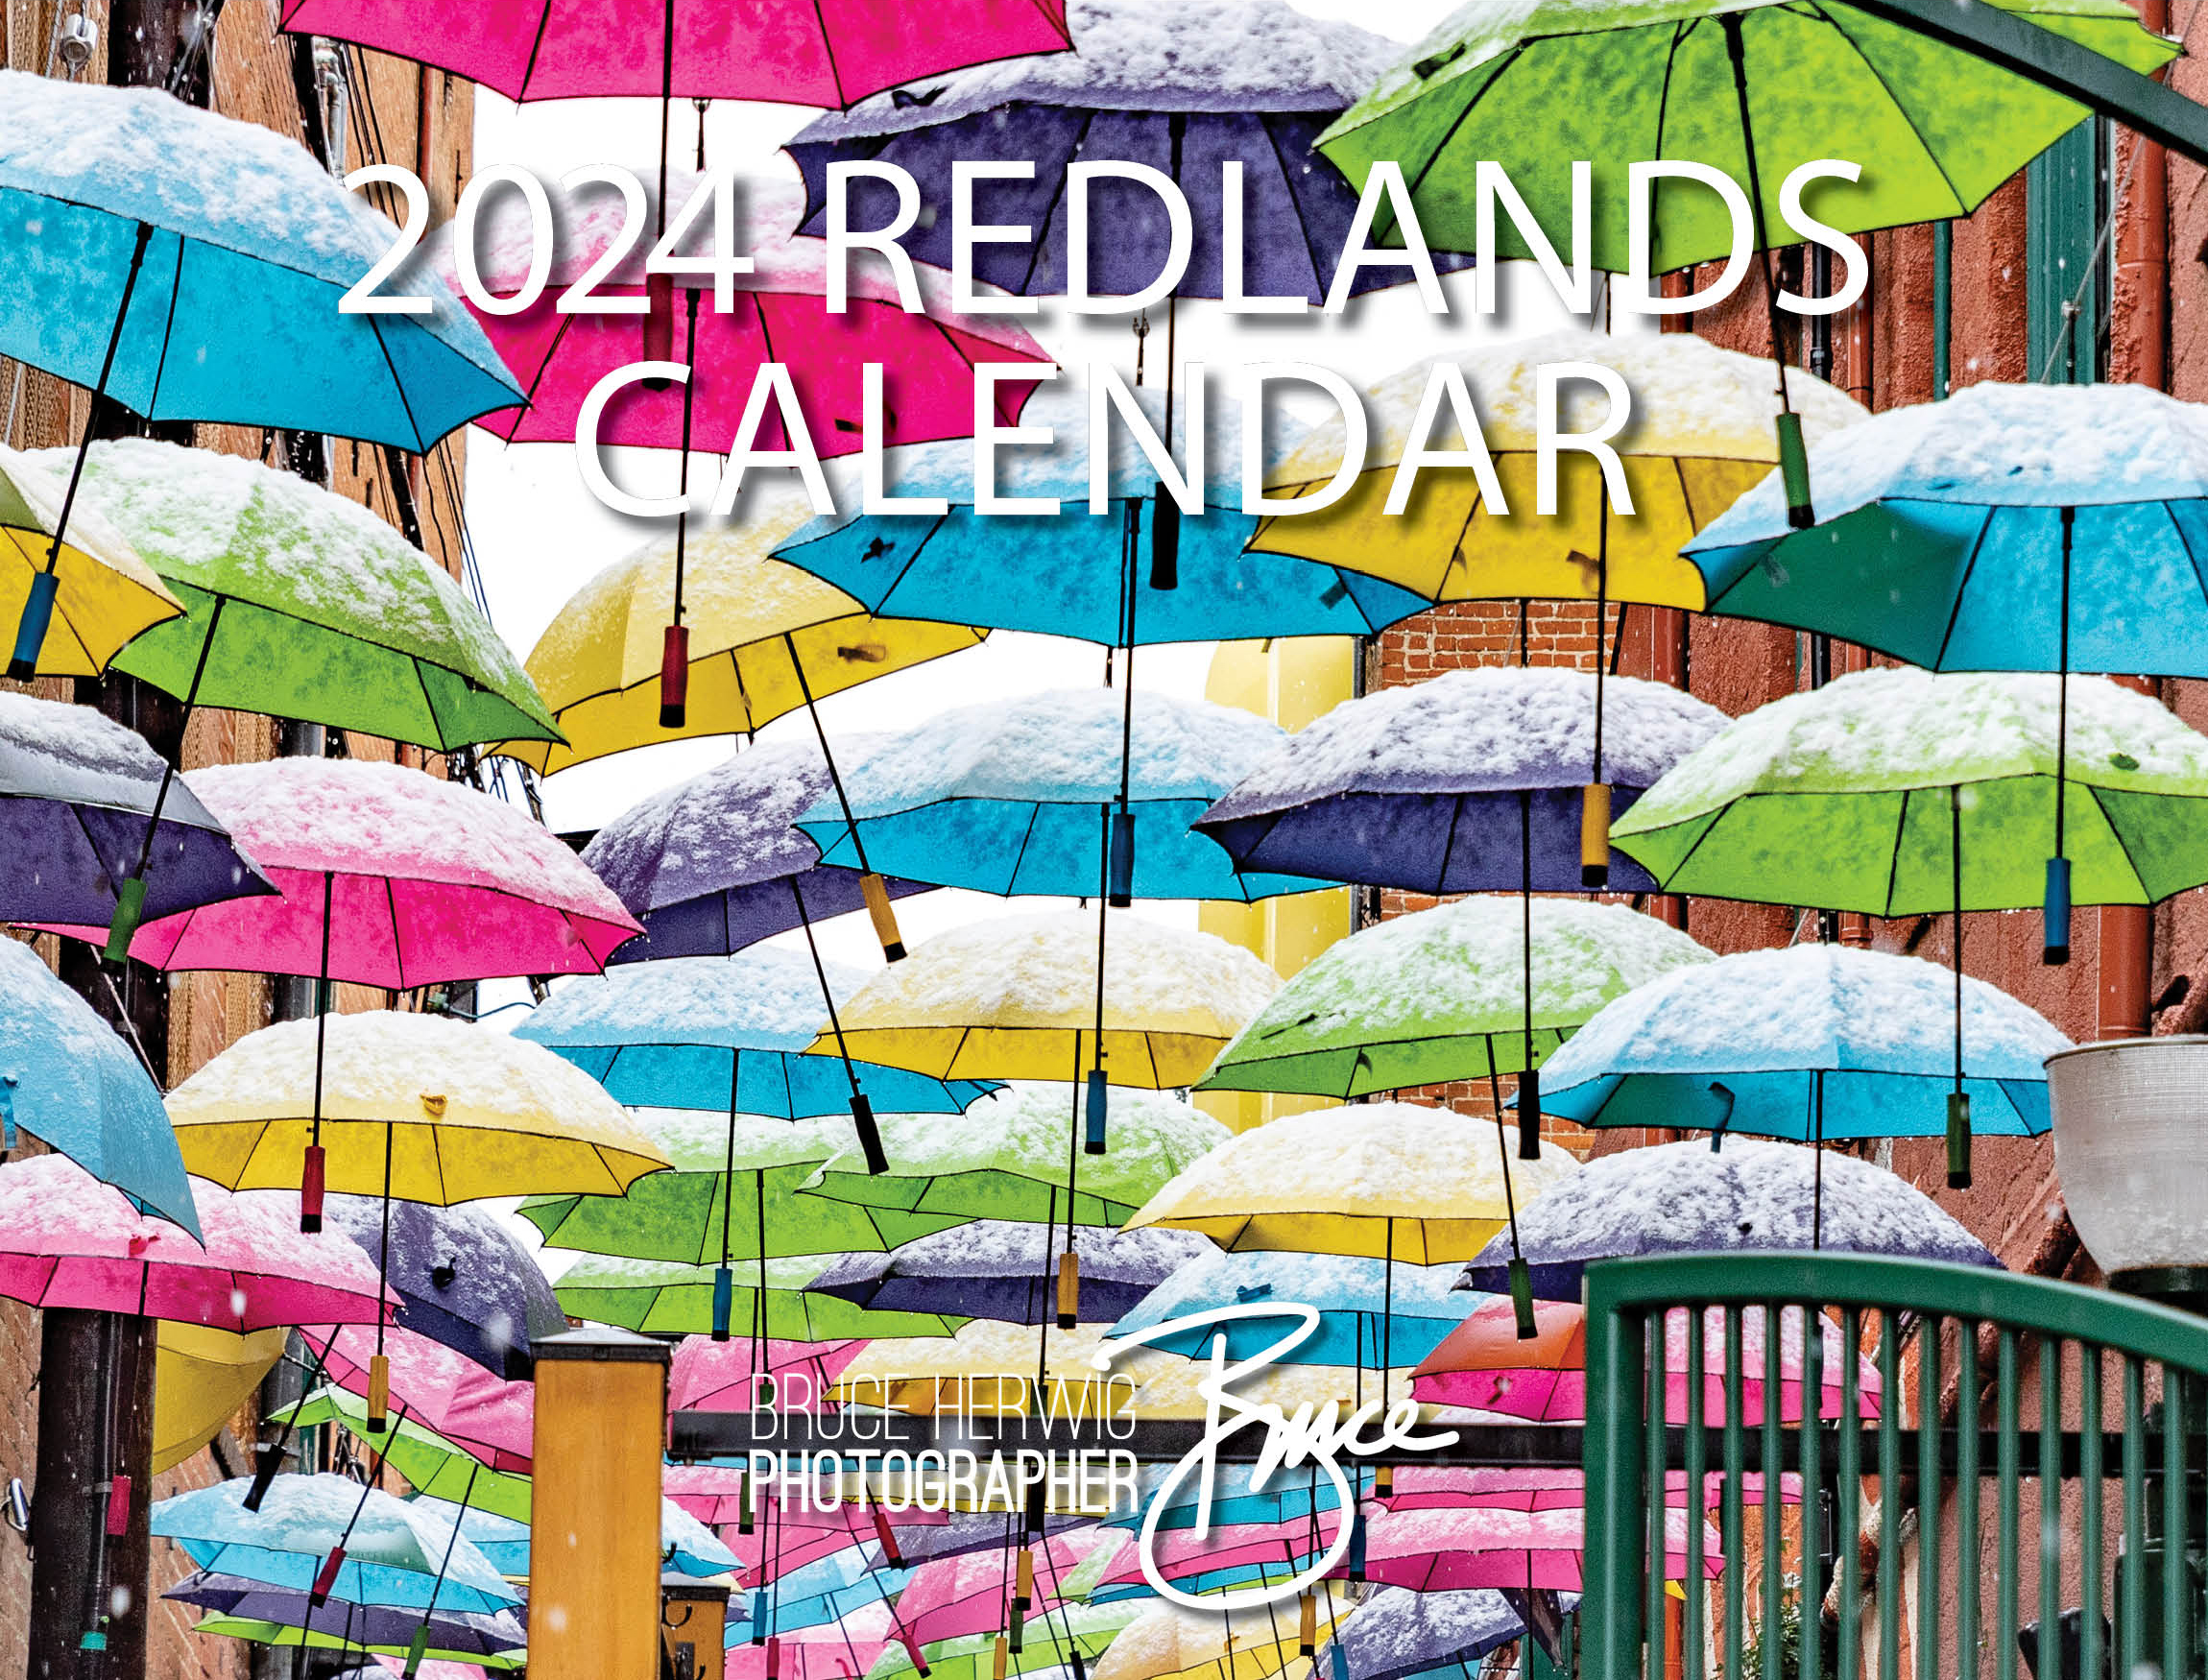 Redlands Calendar - Design File Vertical